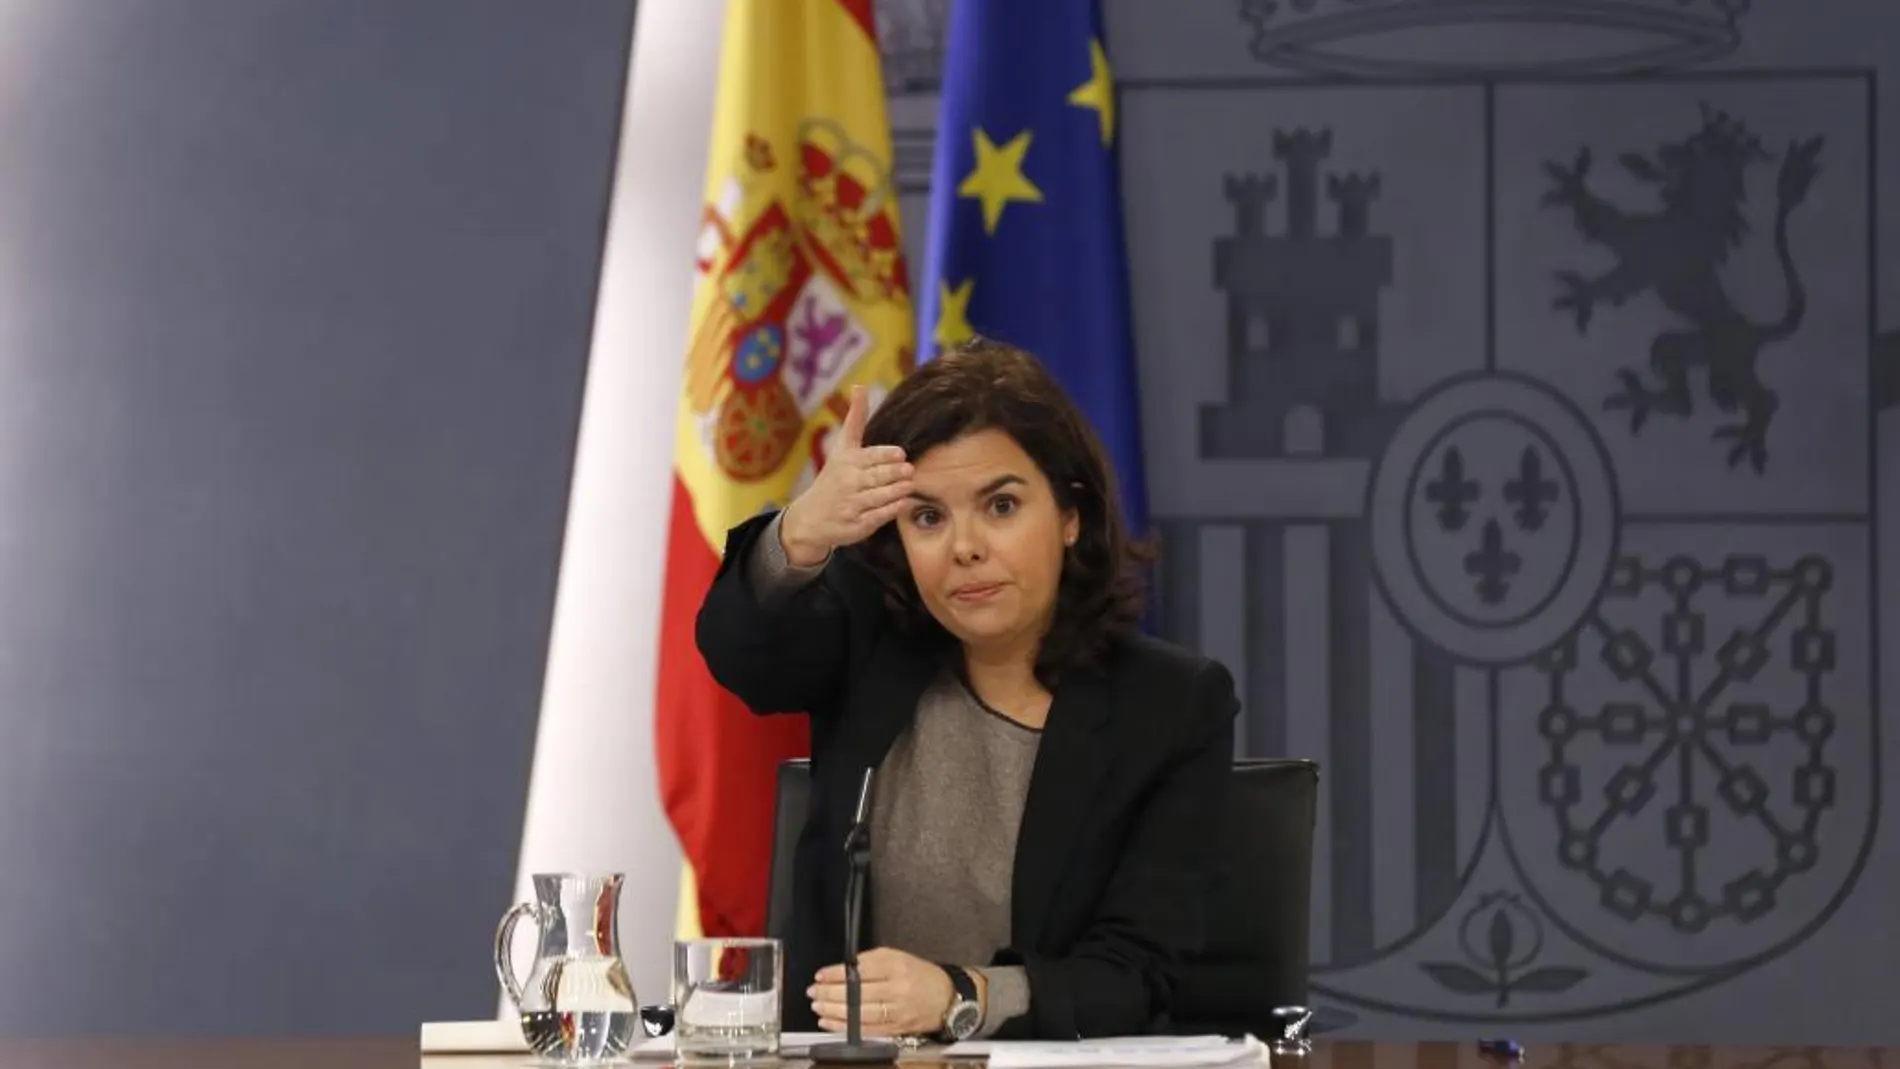 La vicepresidenta del Gobierno, Soraya Sáenz de Santamaría, durante la rueda de prensa tras la reunión del Consejo de Ministros